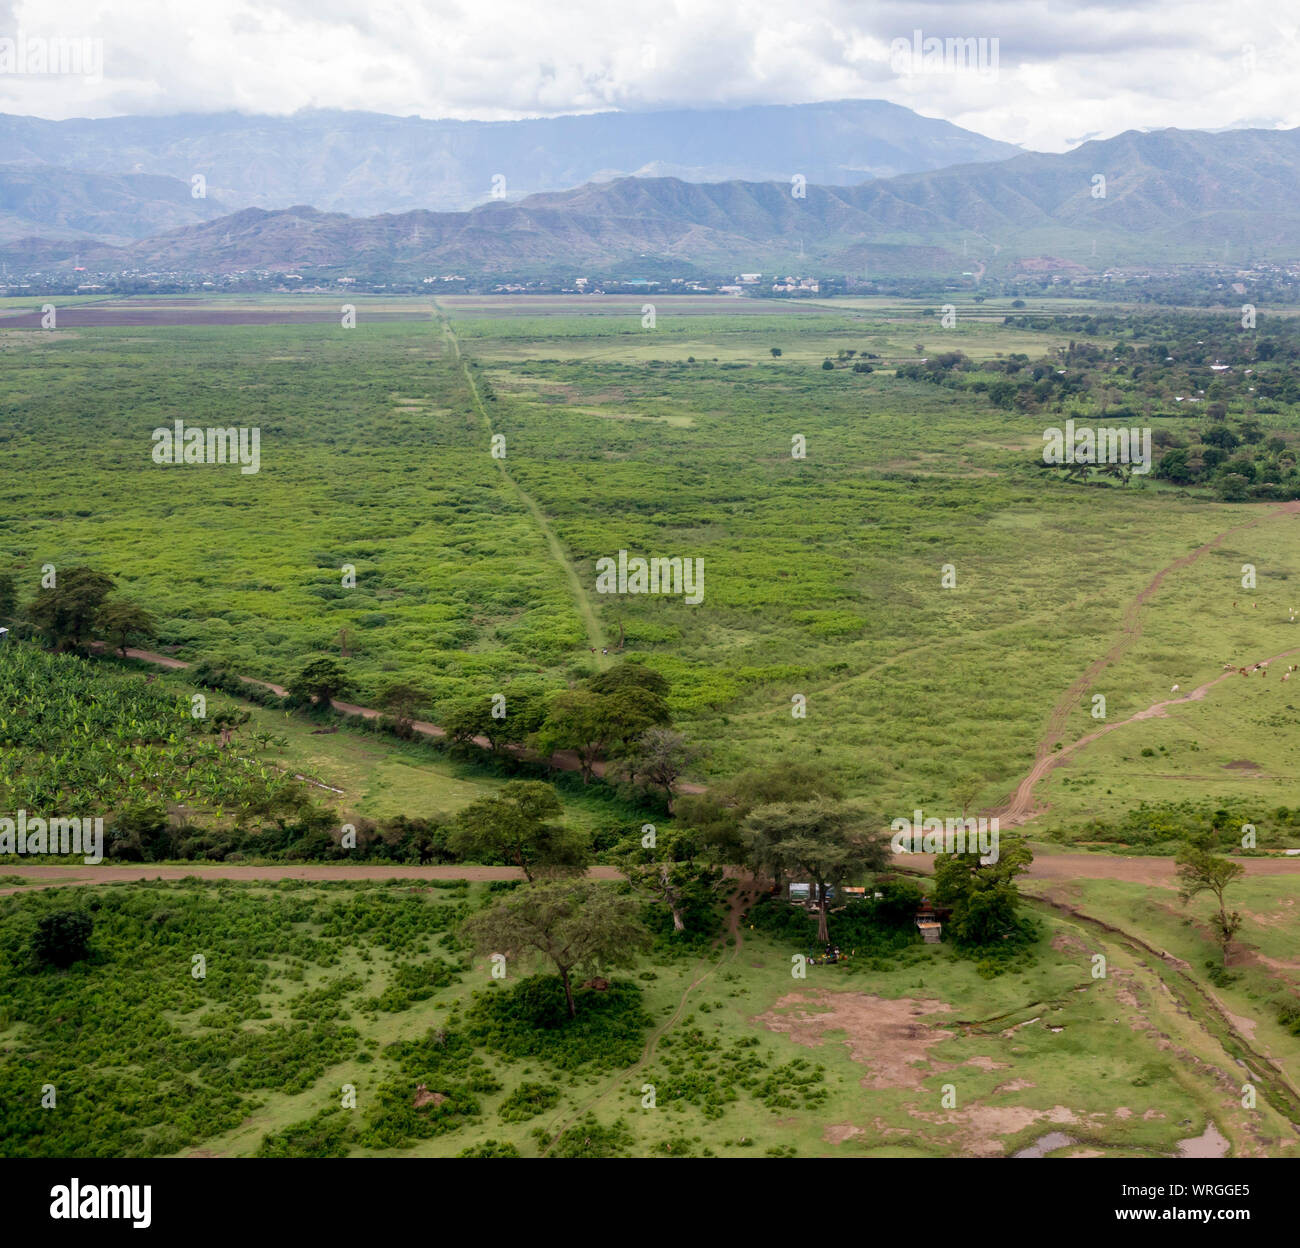 Vista aérea del paisaje tropical cerca de Arba Minch, Etiopía. Foto de stock